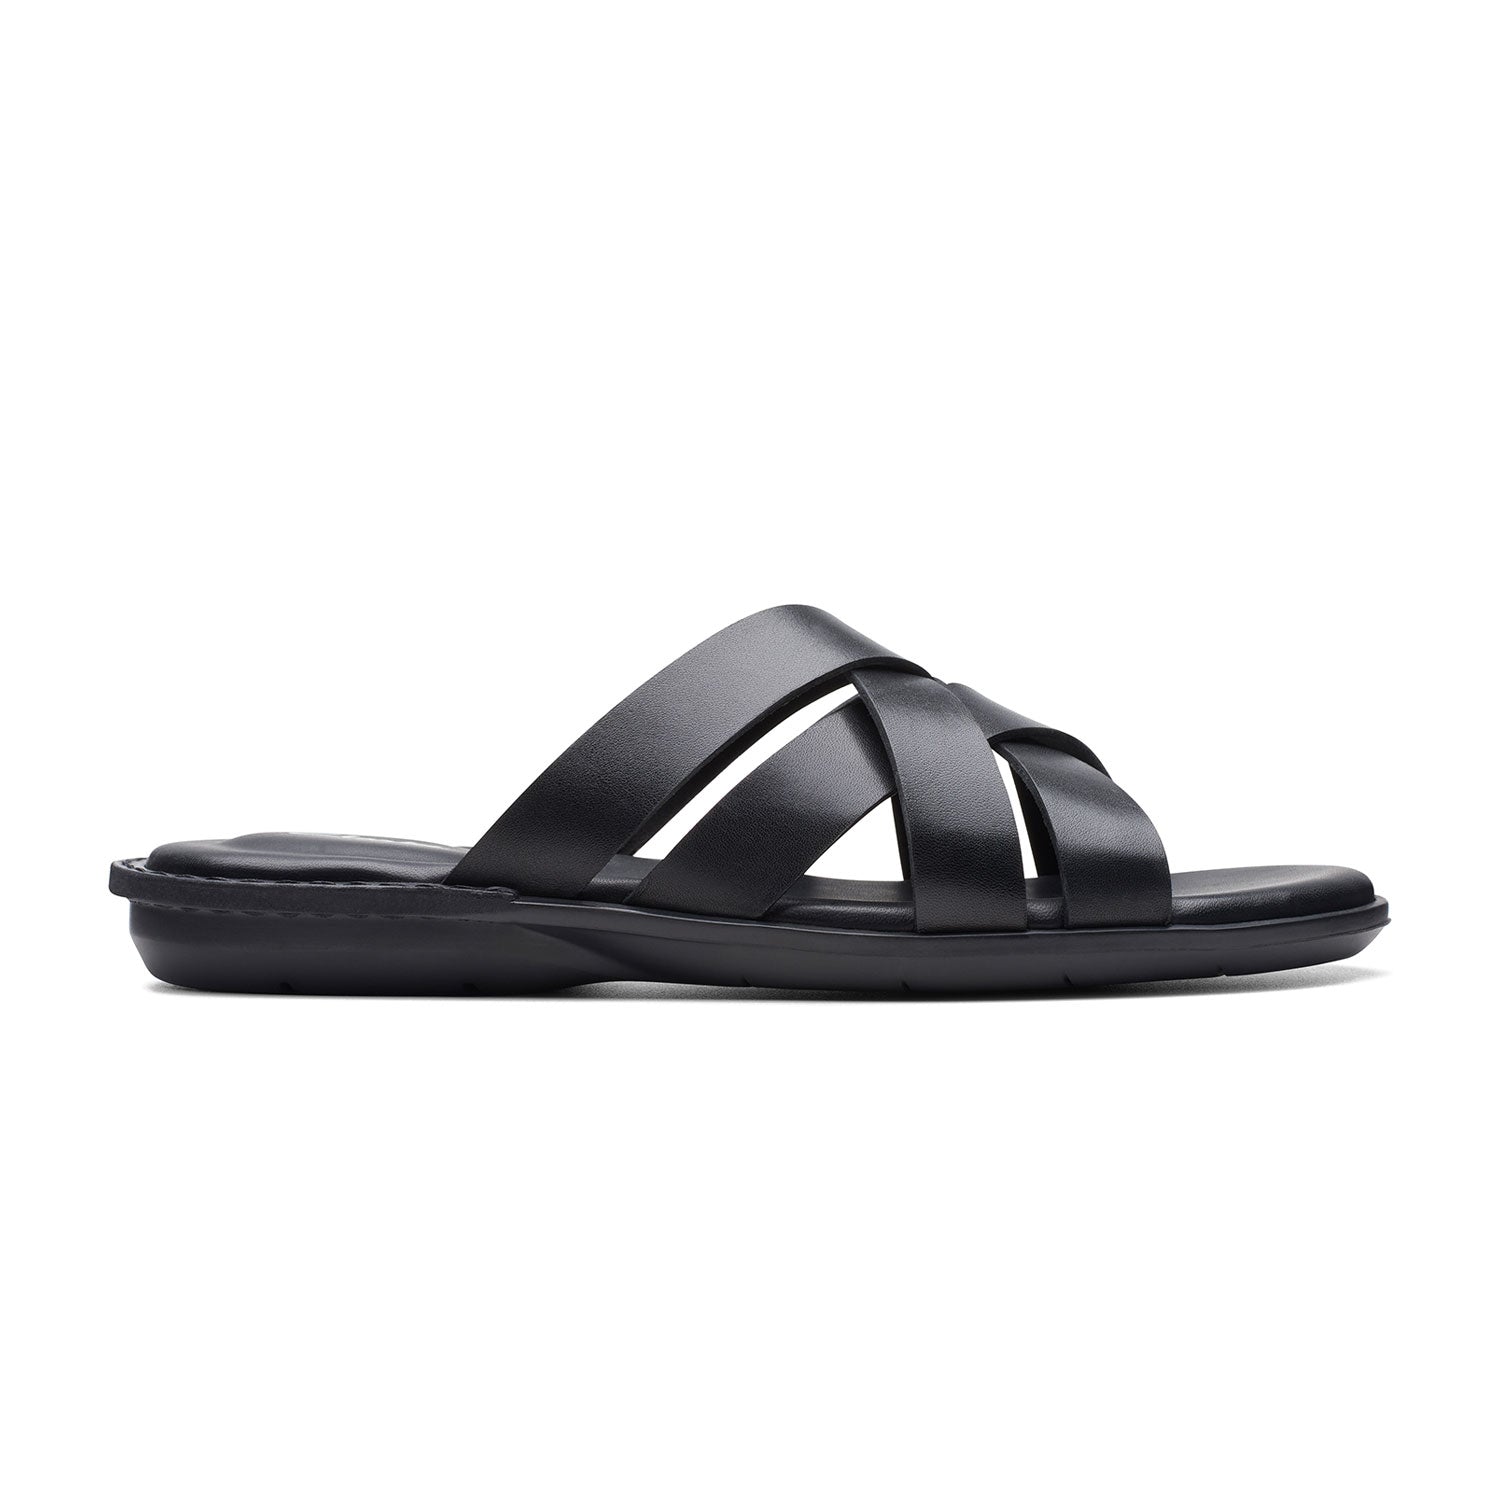 Clarks Penryn Weave Sandals - Black Leather - 261745917 - G Width (Standard Fit)